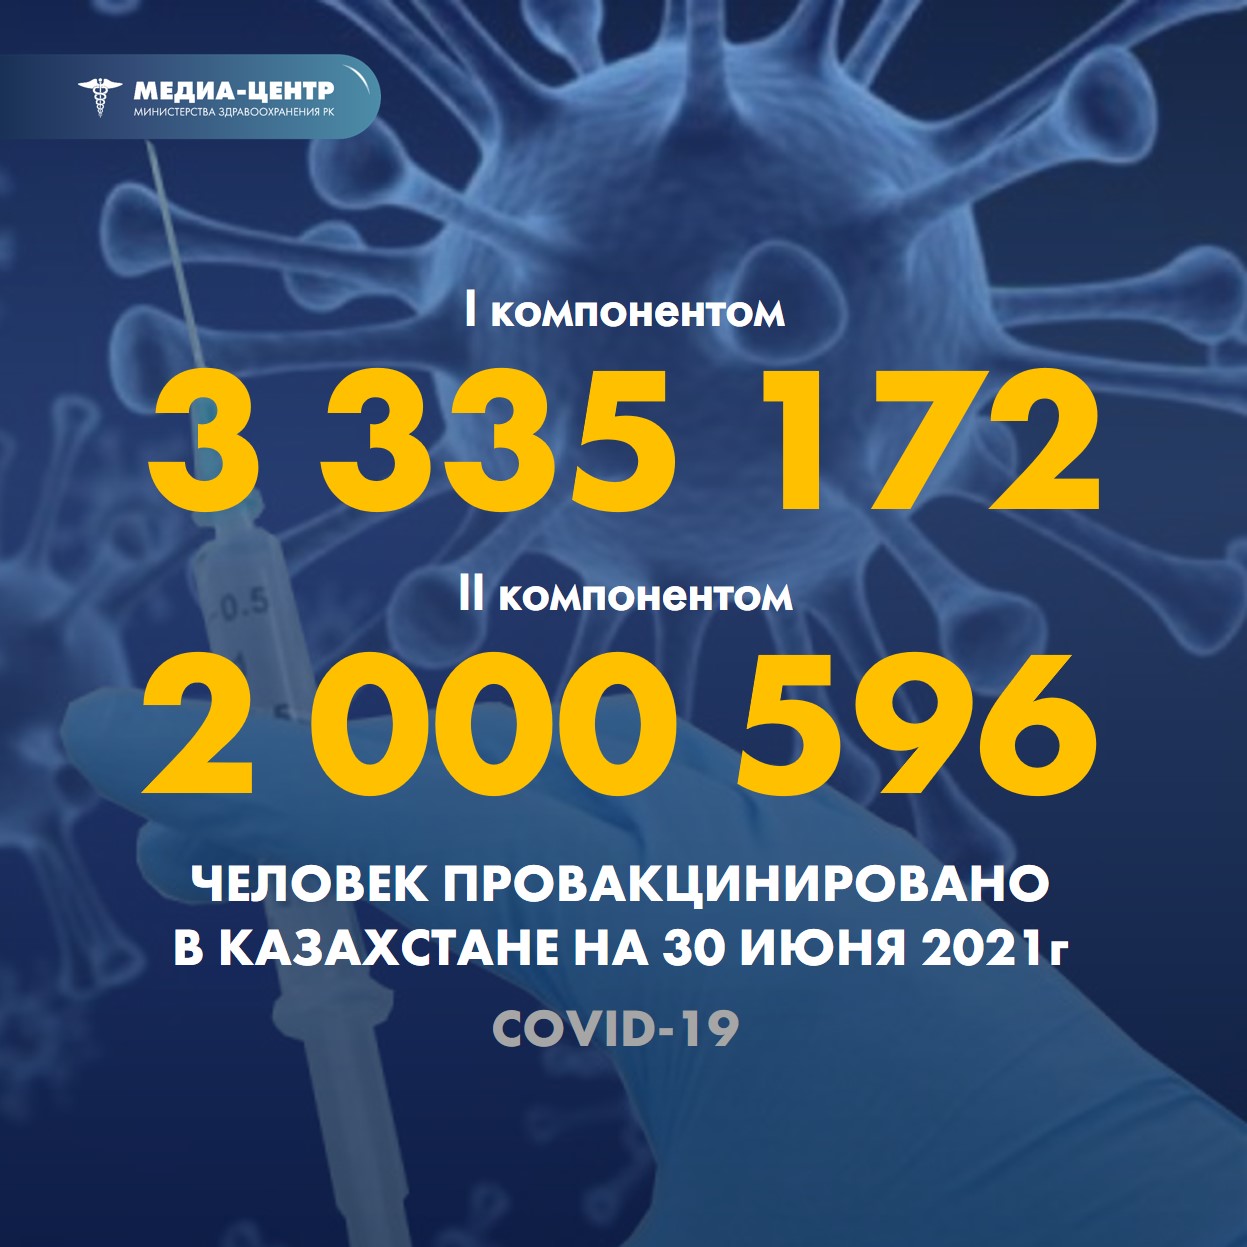 I компонентом 3 335 172 человека провакцинировано в Казахстане на 30 июня 2021 г, II компонентом 2 000 596 человек.